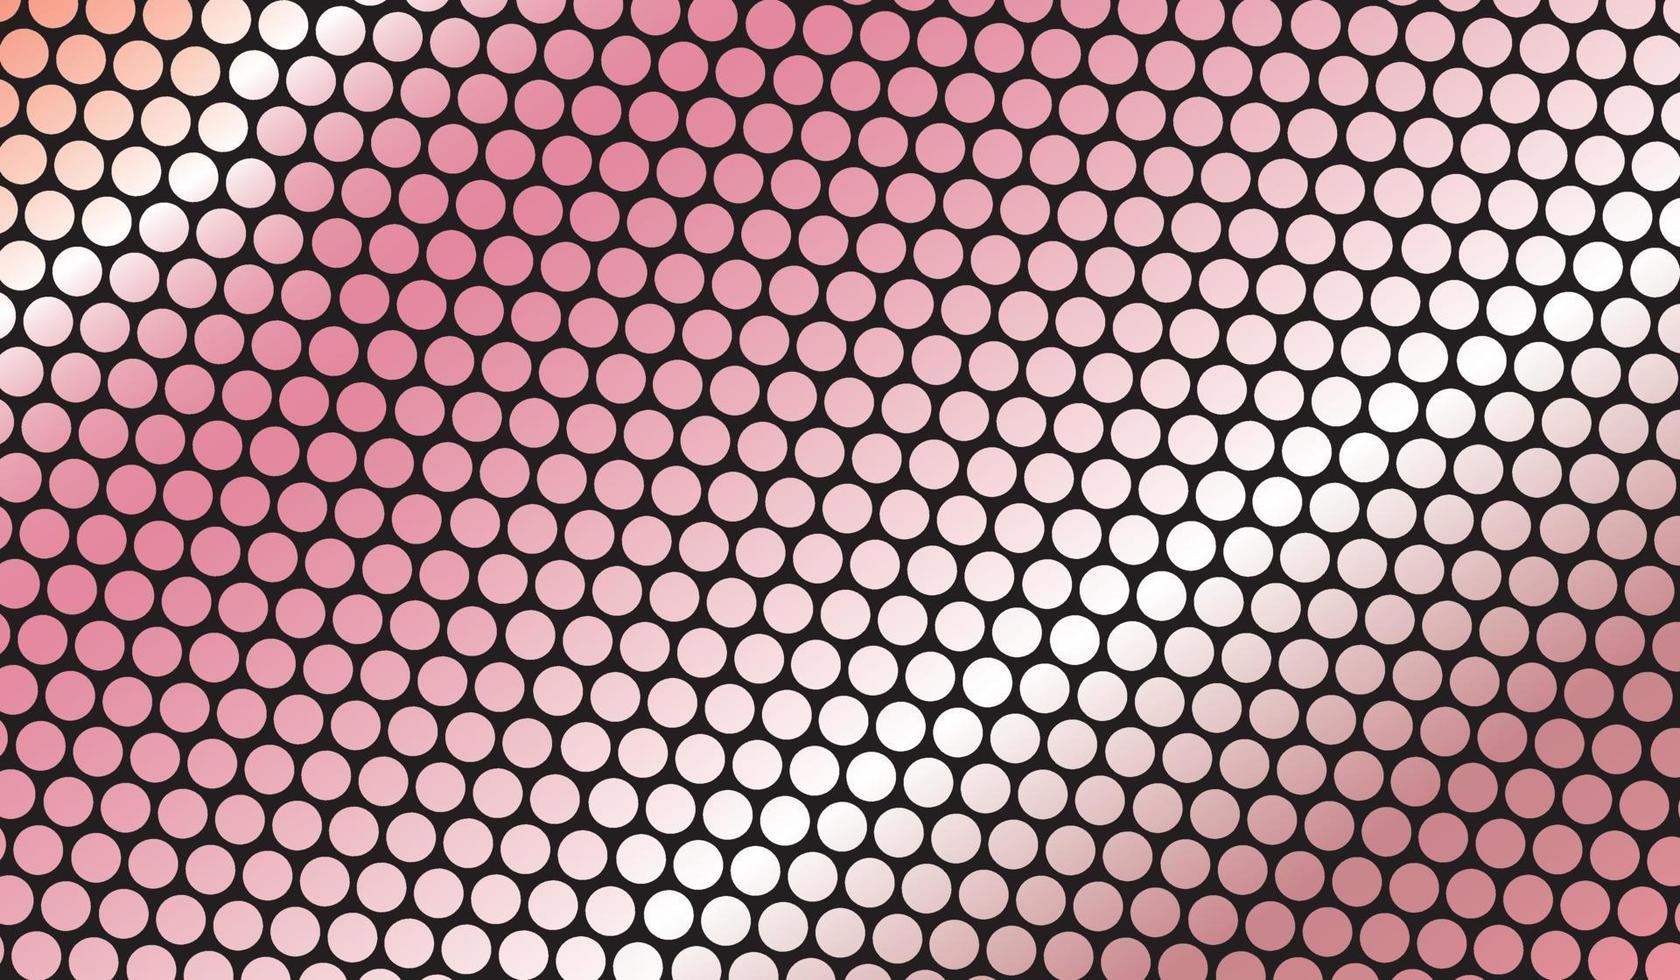 fond abstrait avec des points roses, illustration vectorielle vecteur